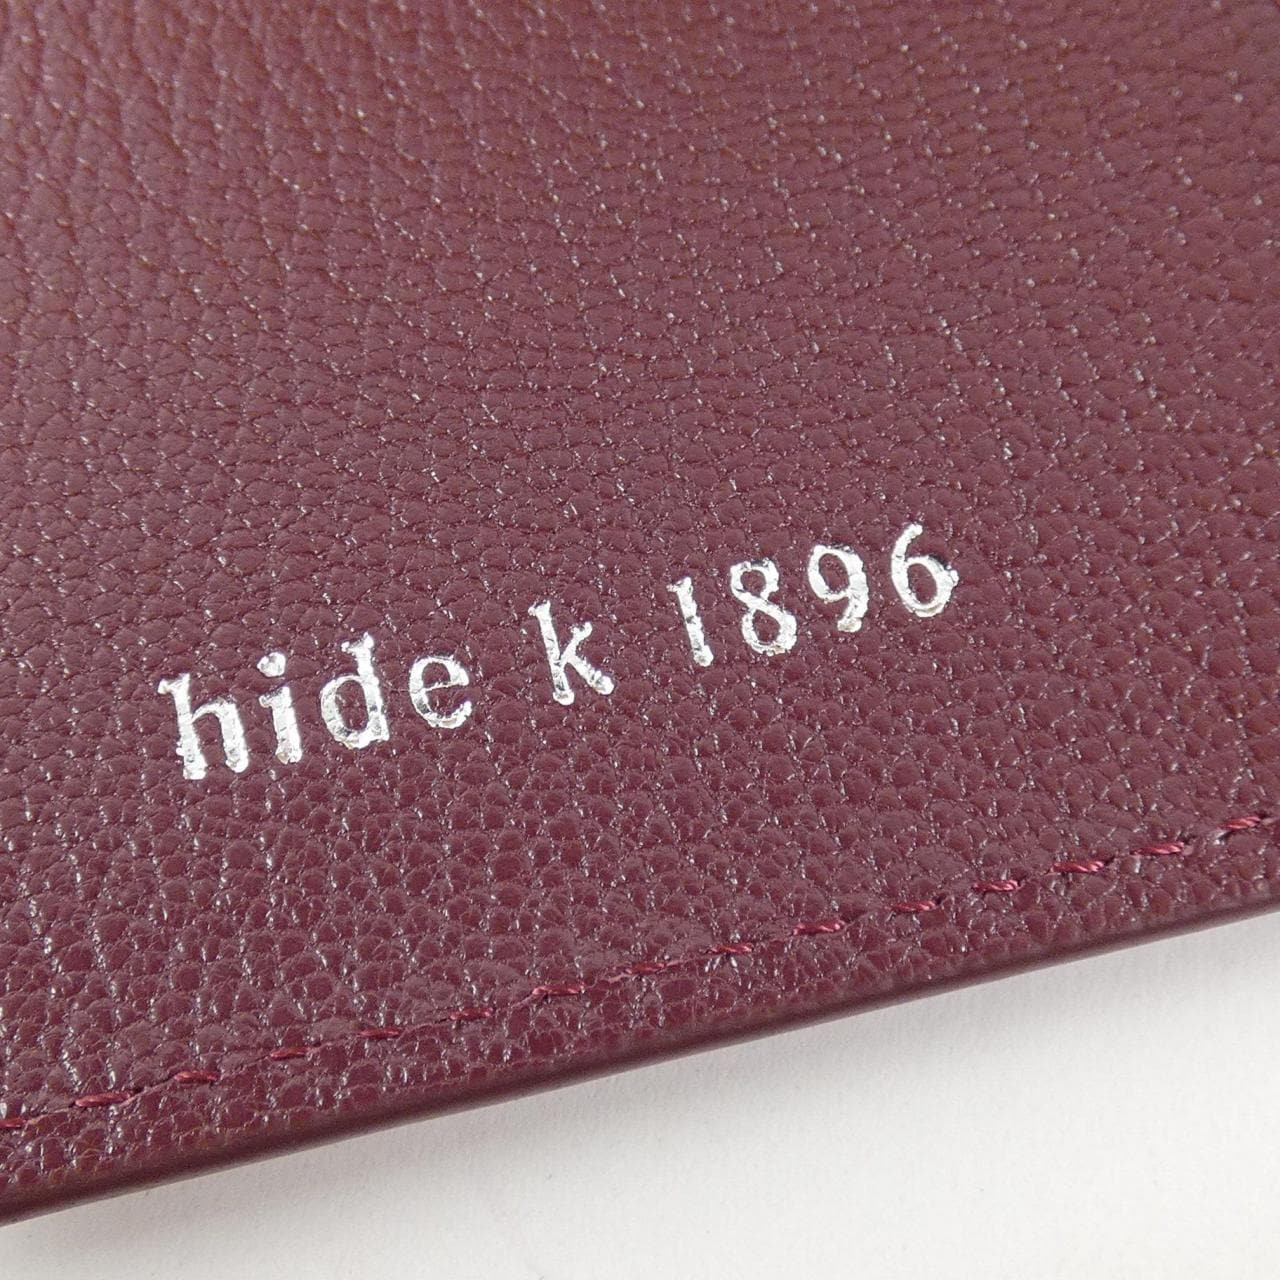 HIDEK1896 CARD CASE